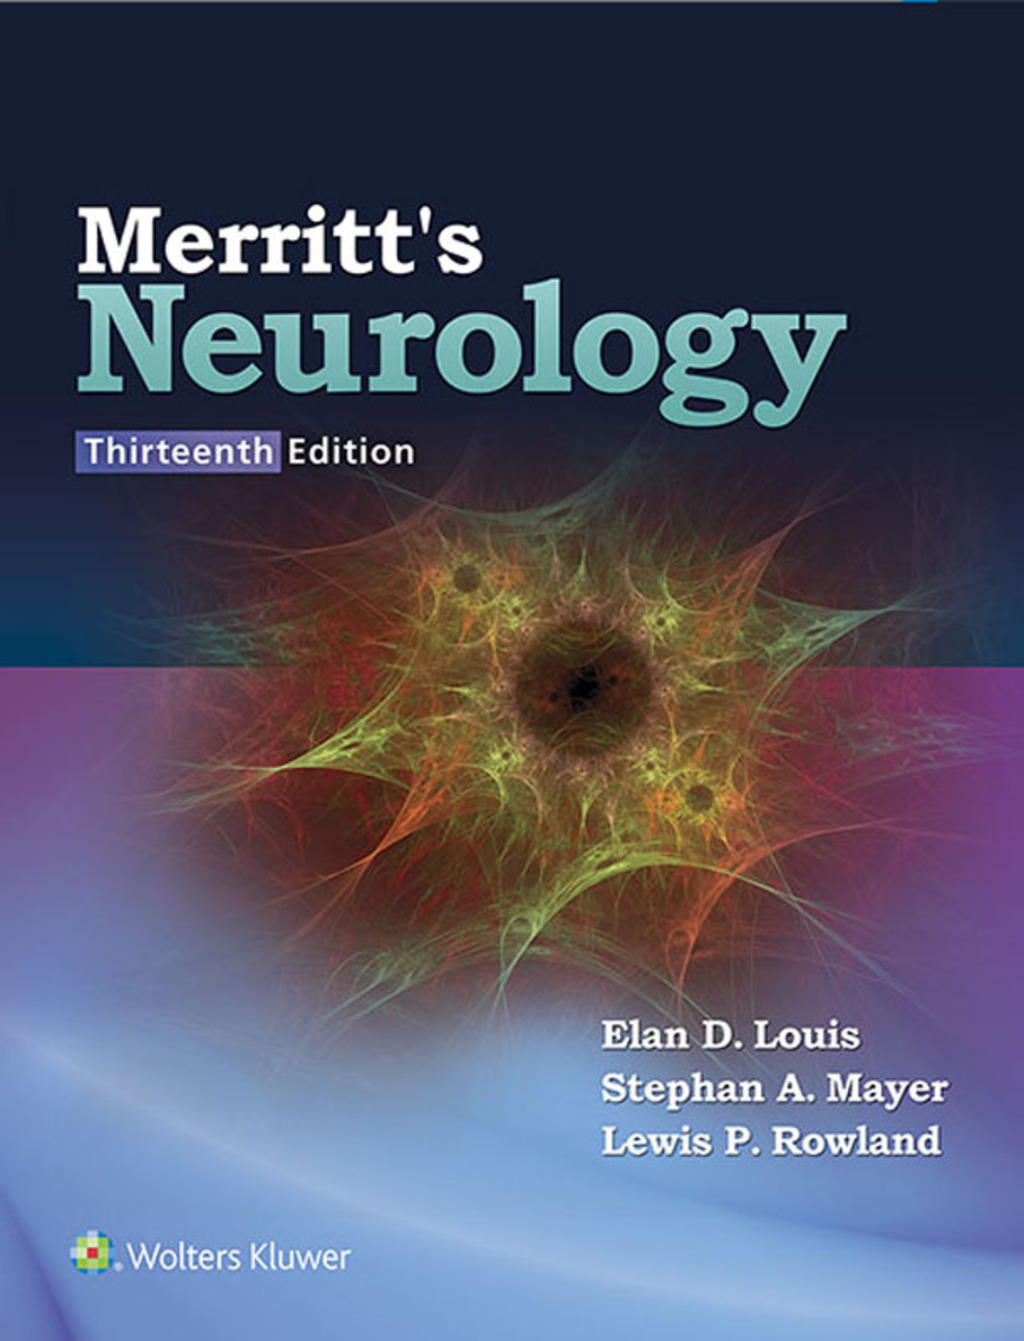 Merritt's Neurology (eBook) - Elan D. Louis; Stephan A. Mayer; Lewis P. Roland